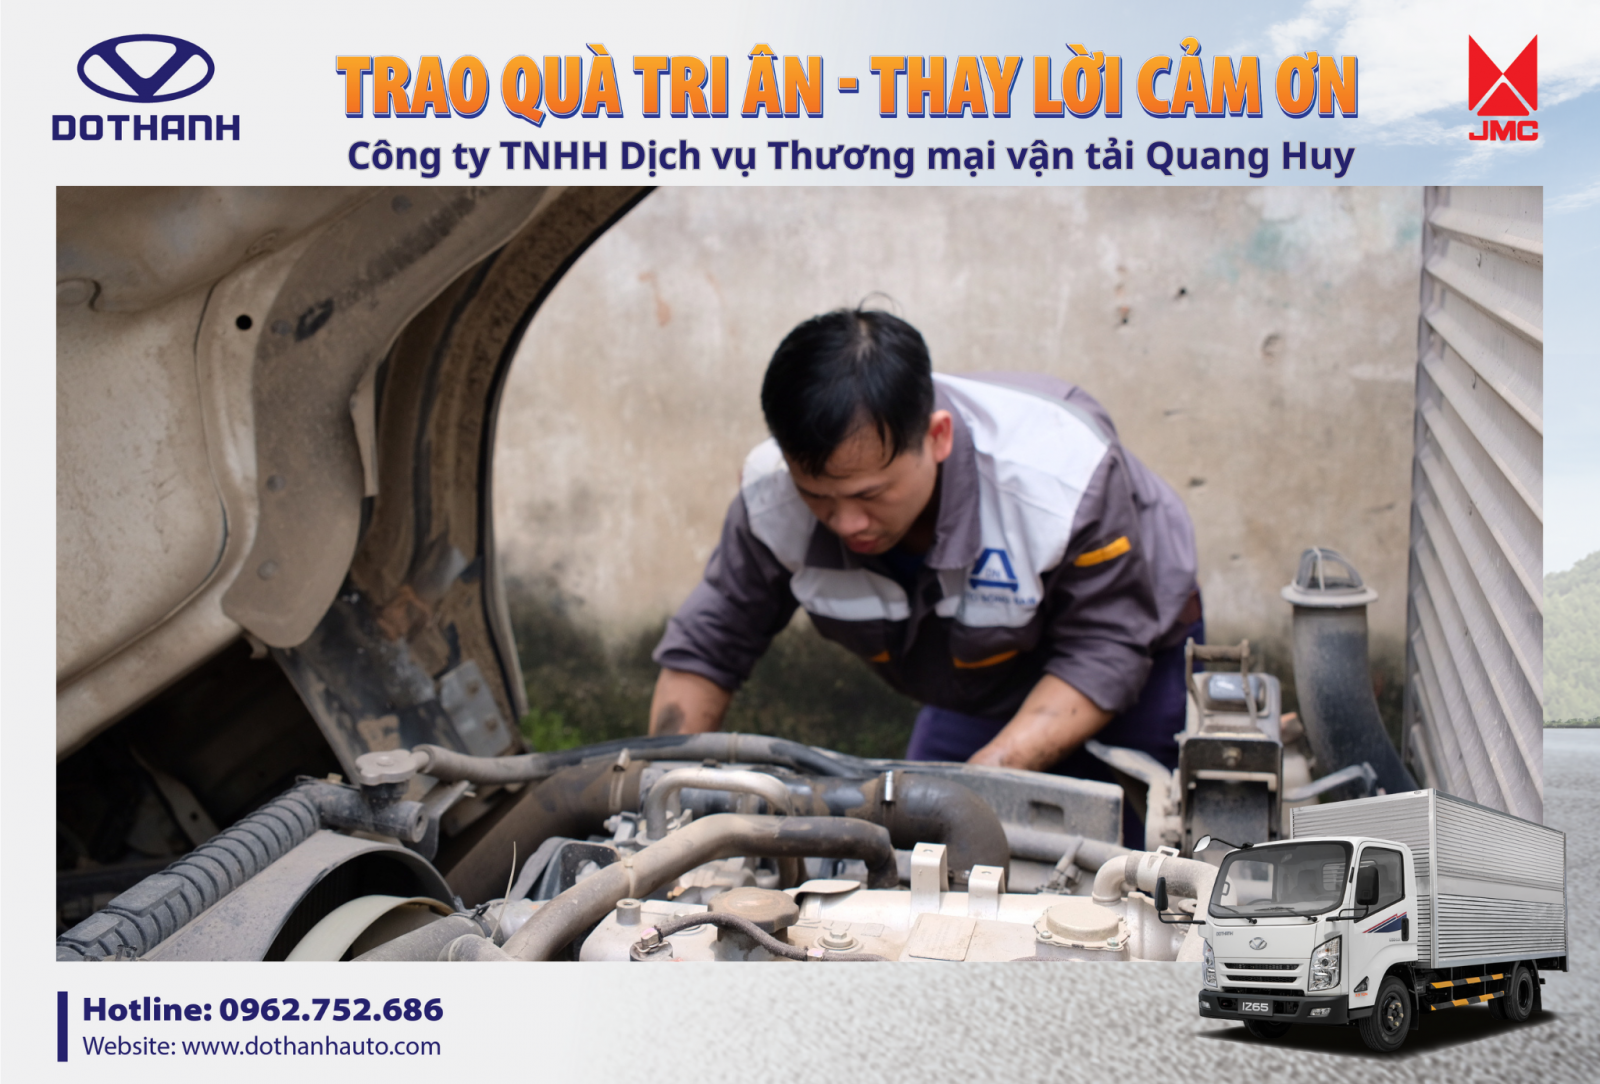 Các chuyên gia, kỹ thuật viên của DoThanh Auto và đại lý Auto Đông Nam kiểm tra xe tổng quát cho đội xe DOTHANH IZ65 của doanh nghiệp Quang Huy trong chương trình tri ân khách hàng